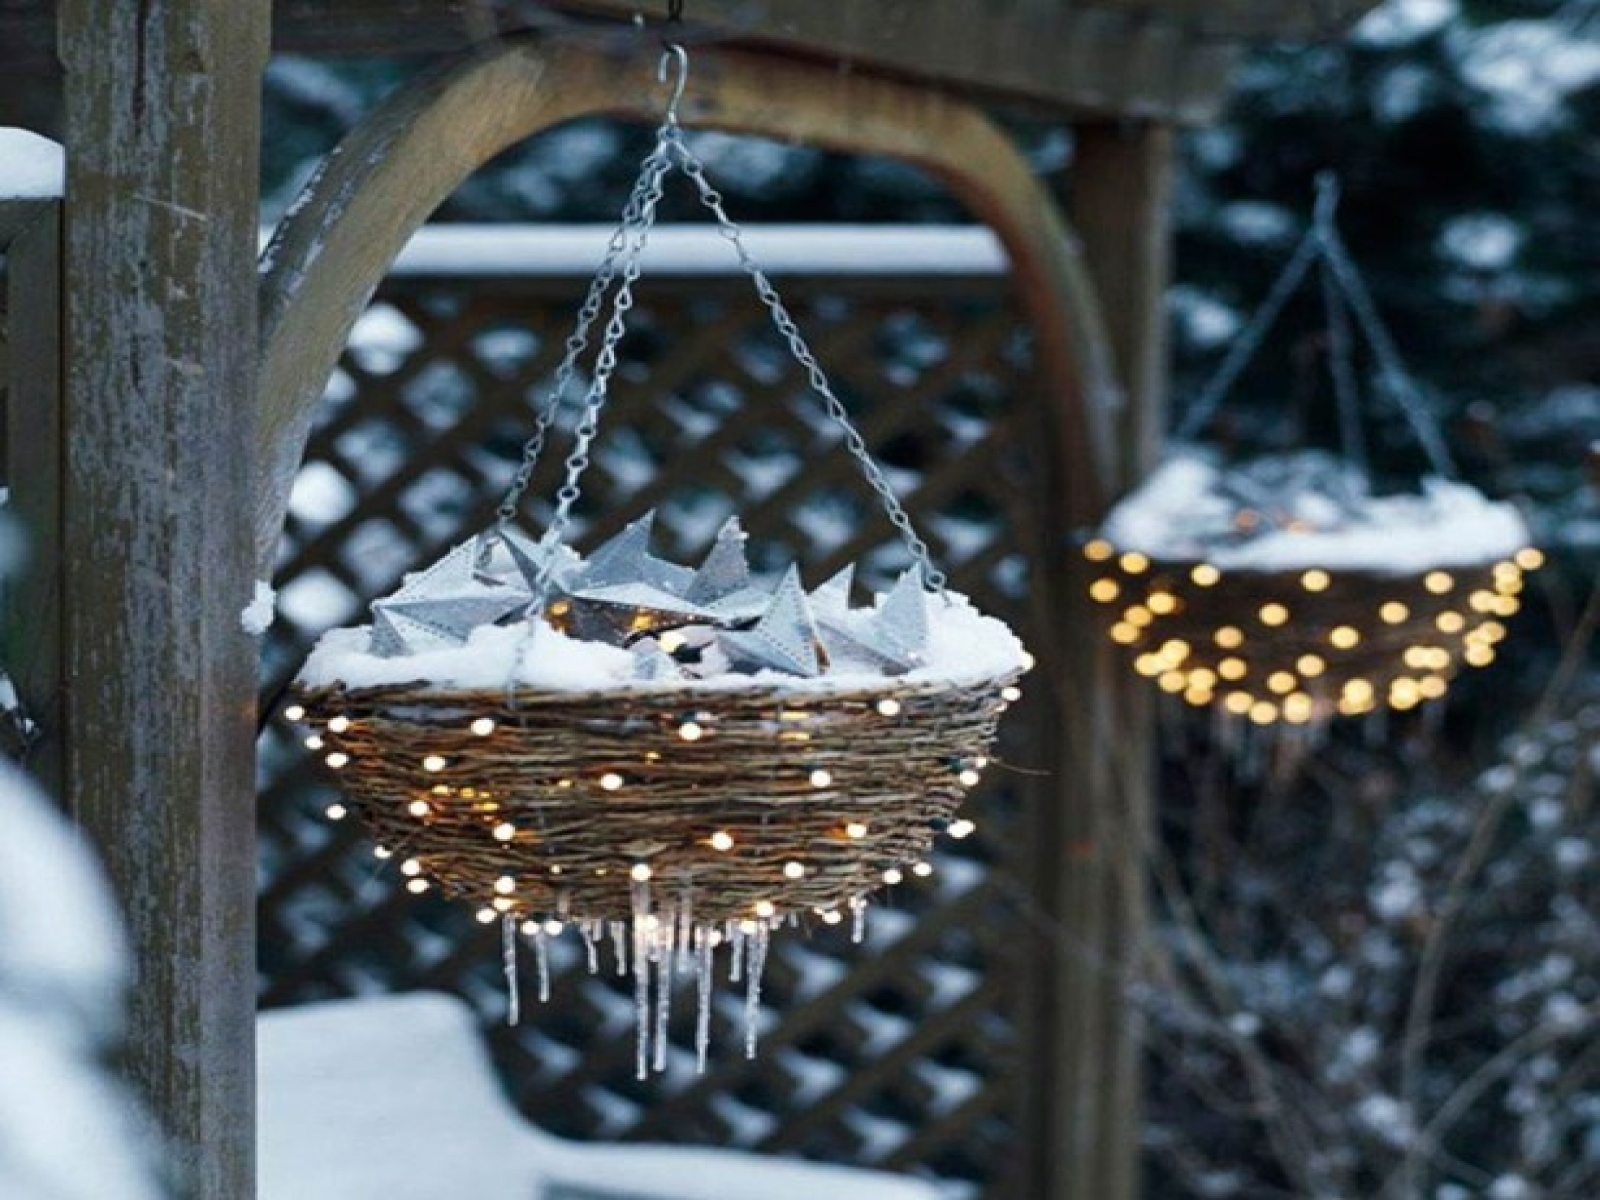 50 Outdoor Christmas Decoration Ideas For A Festive Season